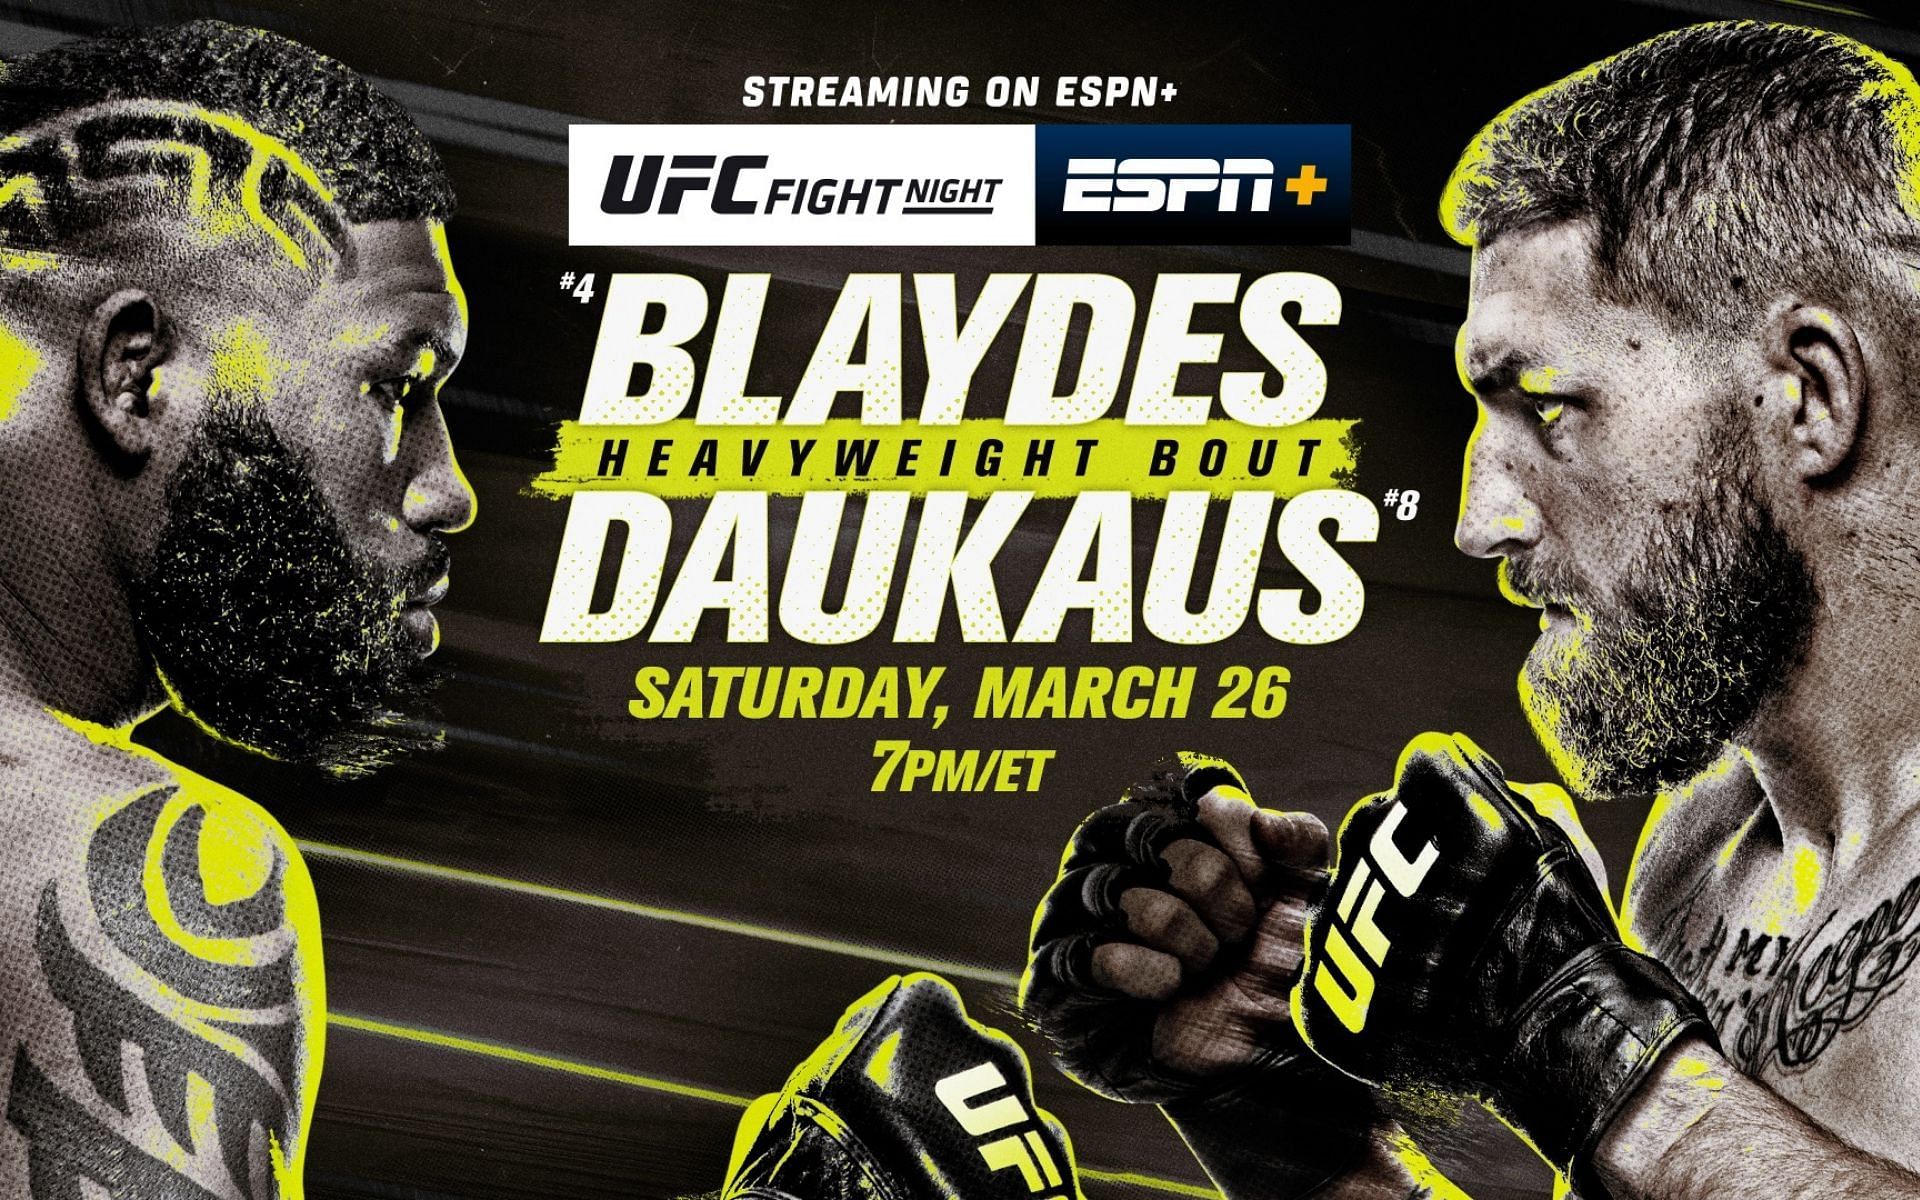 UFC Fight Night: Blaydes vs. Daukaus [Image courtesy @ESPNPR on Twitter]